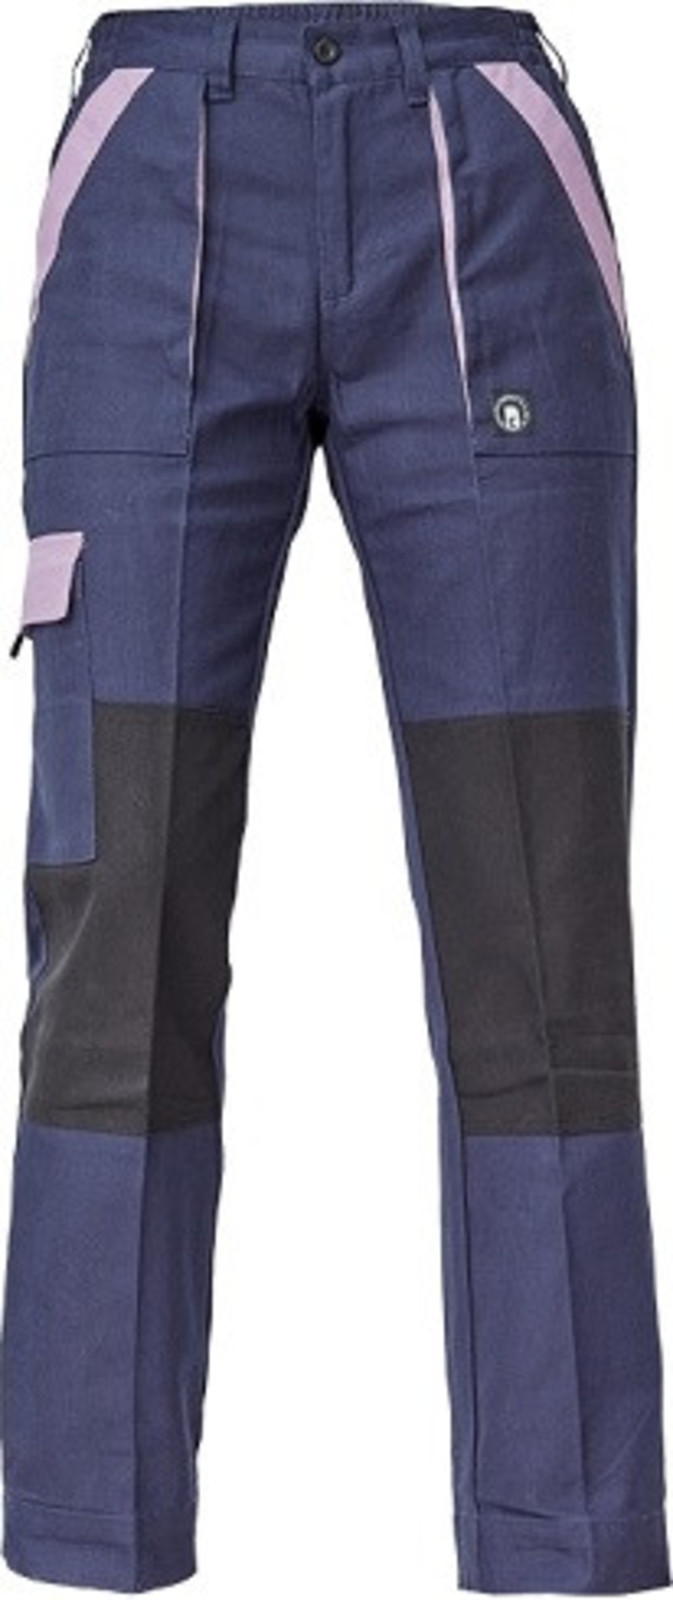 Dámske bavlnené montérky Cerva Max Neo Lady - veľkosť: 40, farba: navy/fialová